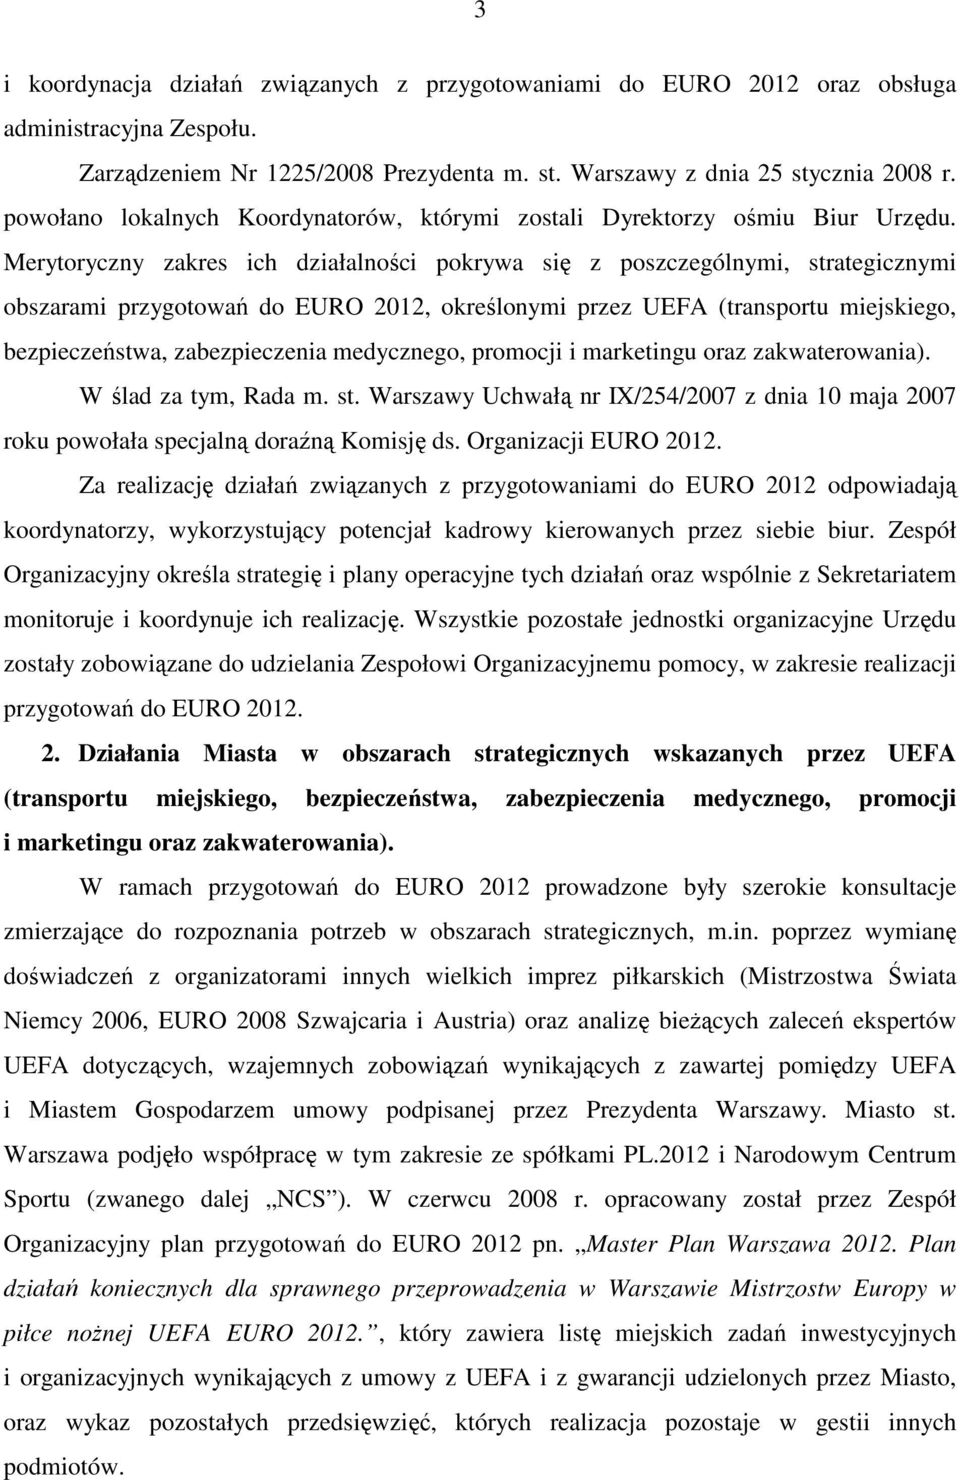 Merytoryczny zakres ich działalności pokrywa się z poszczególnymi, strategicznymi obszarami przygotowań do EURO 2012, określonymi przez UEFA (transportu miejskiego, bezpieczeństwa, zabezpieczenia